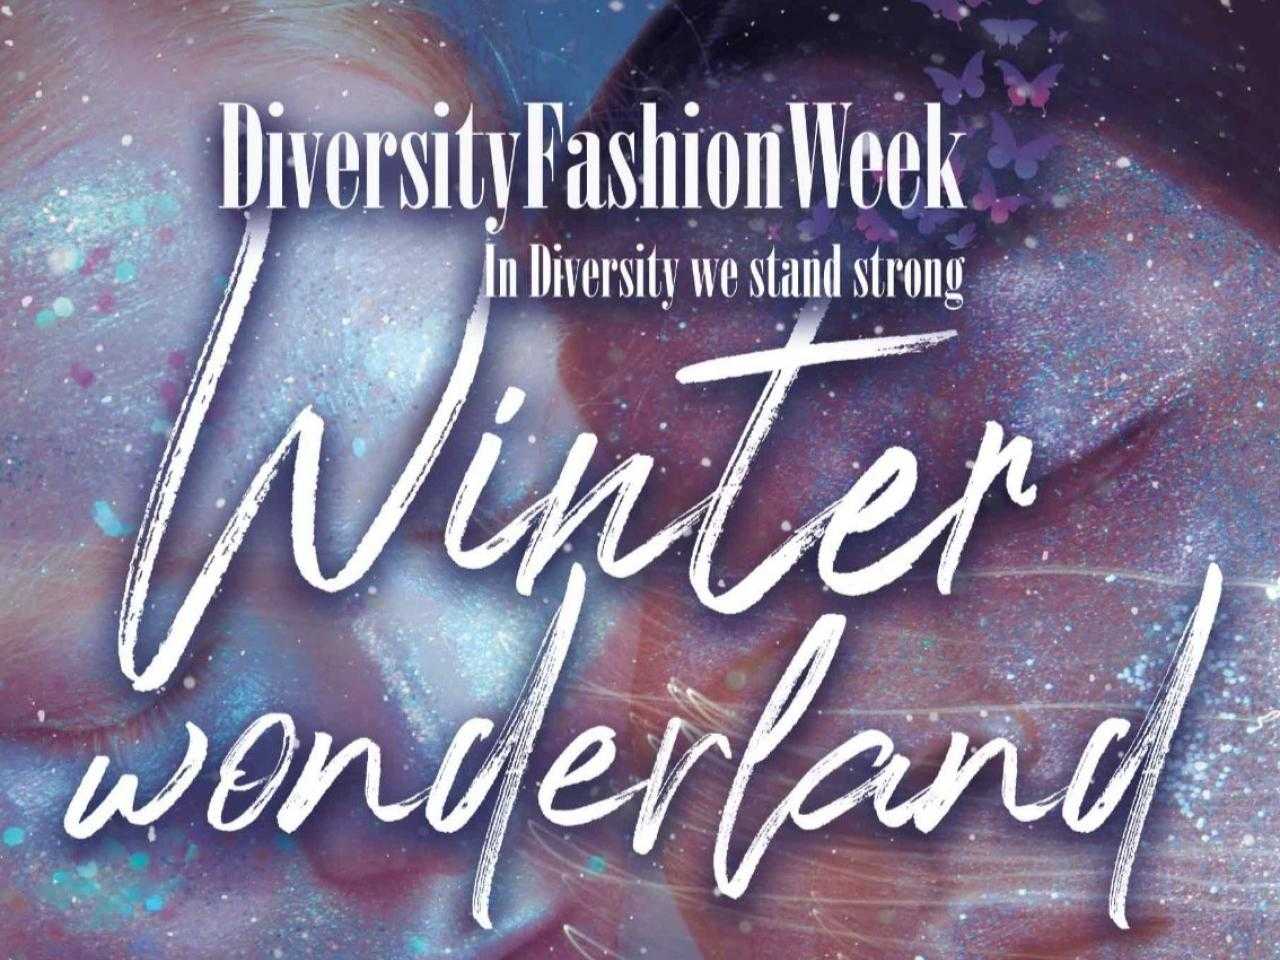 Winter wonderland fashion week 